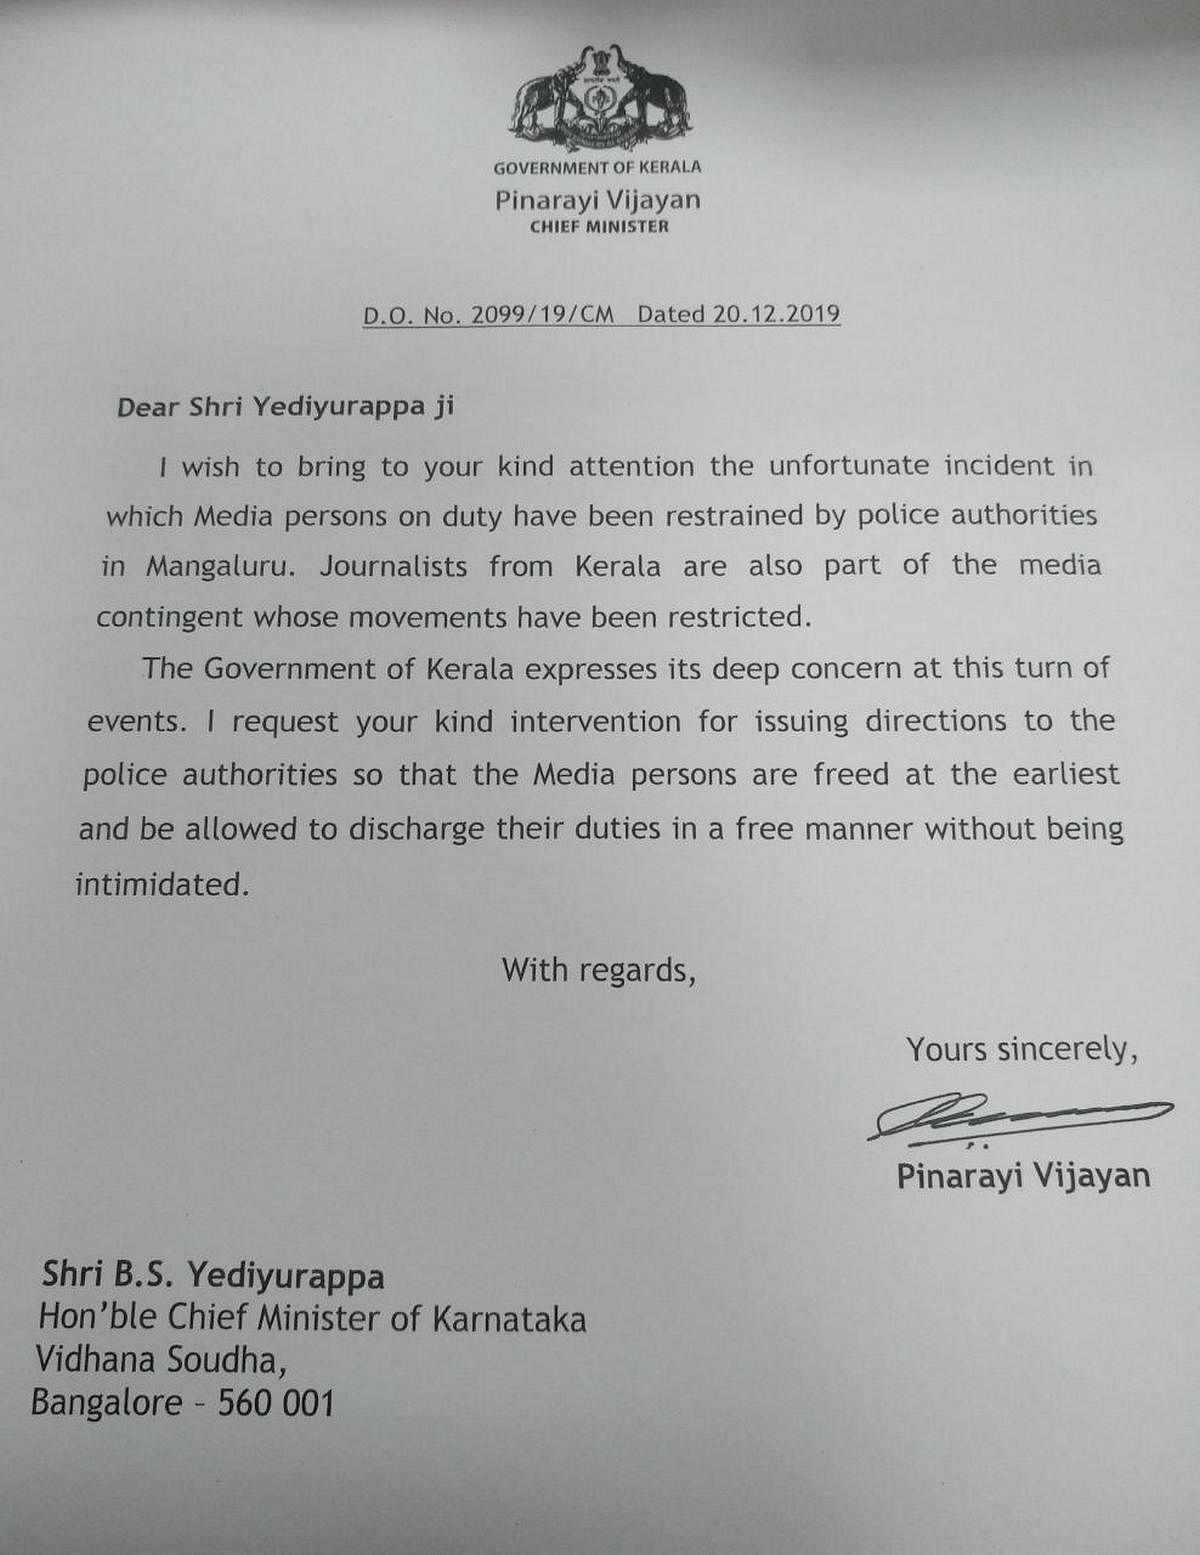 Kerala CM Pinarayi Vijayan's letter to Karnataka CM B.S. Yediyurappa